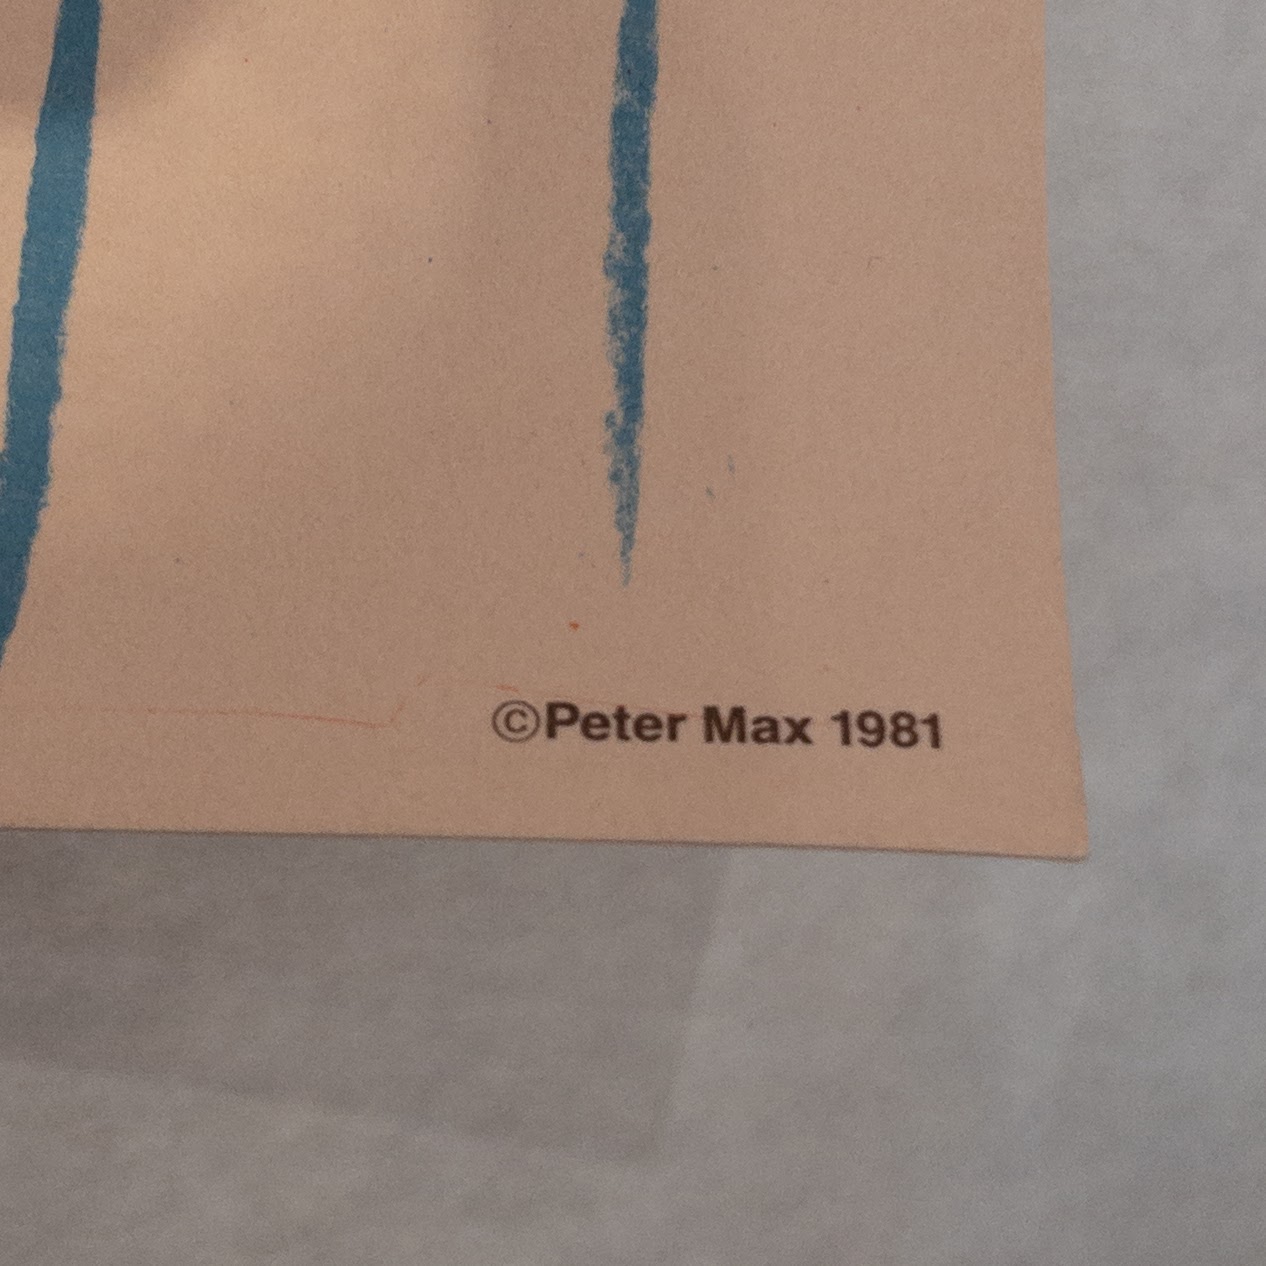 Peter Max Benjaman's Show Signed Poster